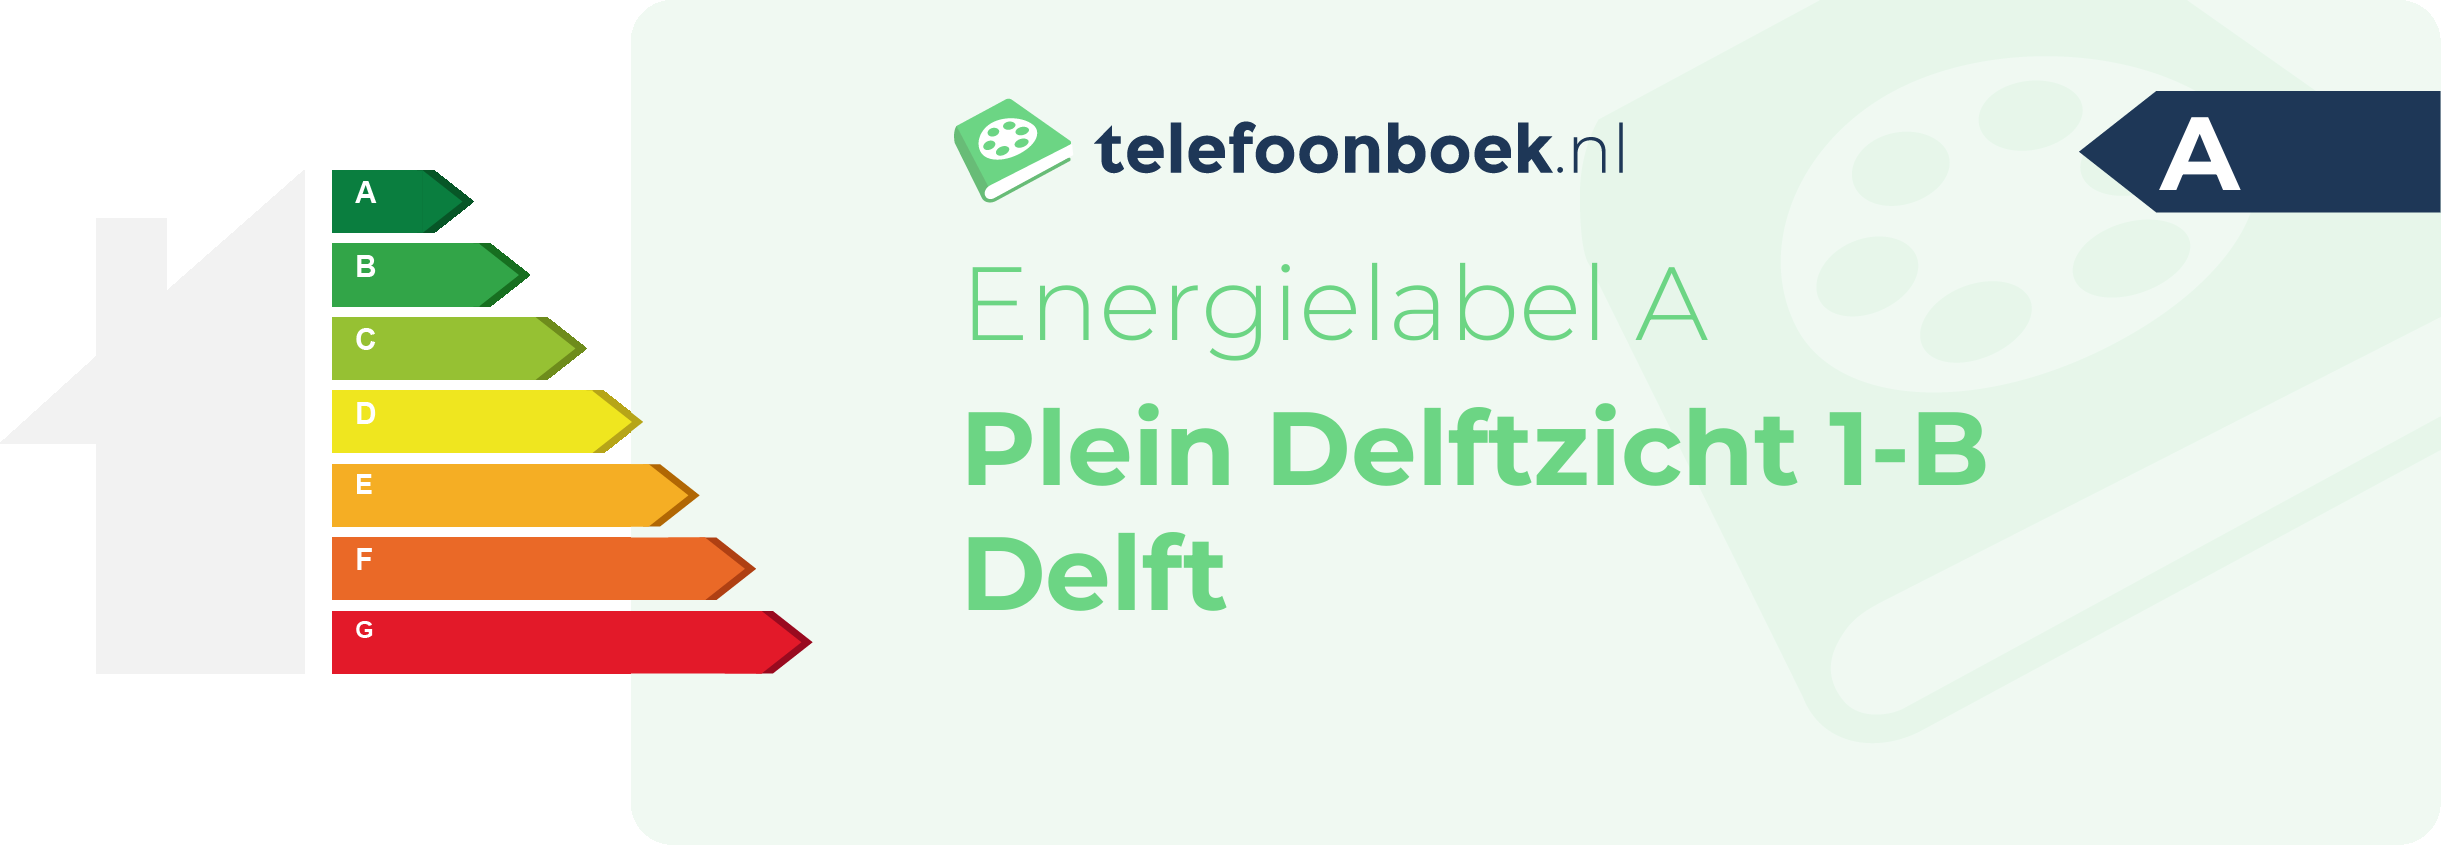 Energielabel Plein Delftzicht 1-B Delft